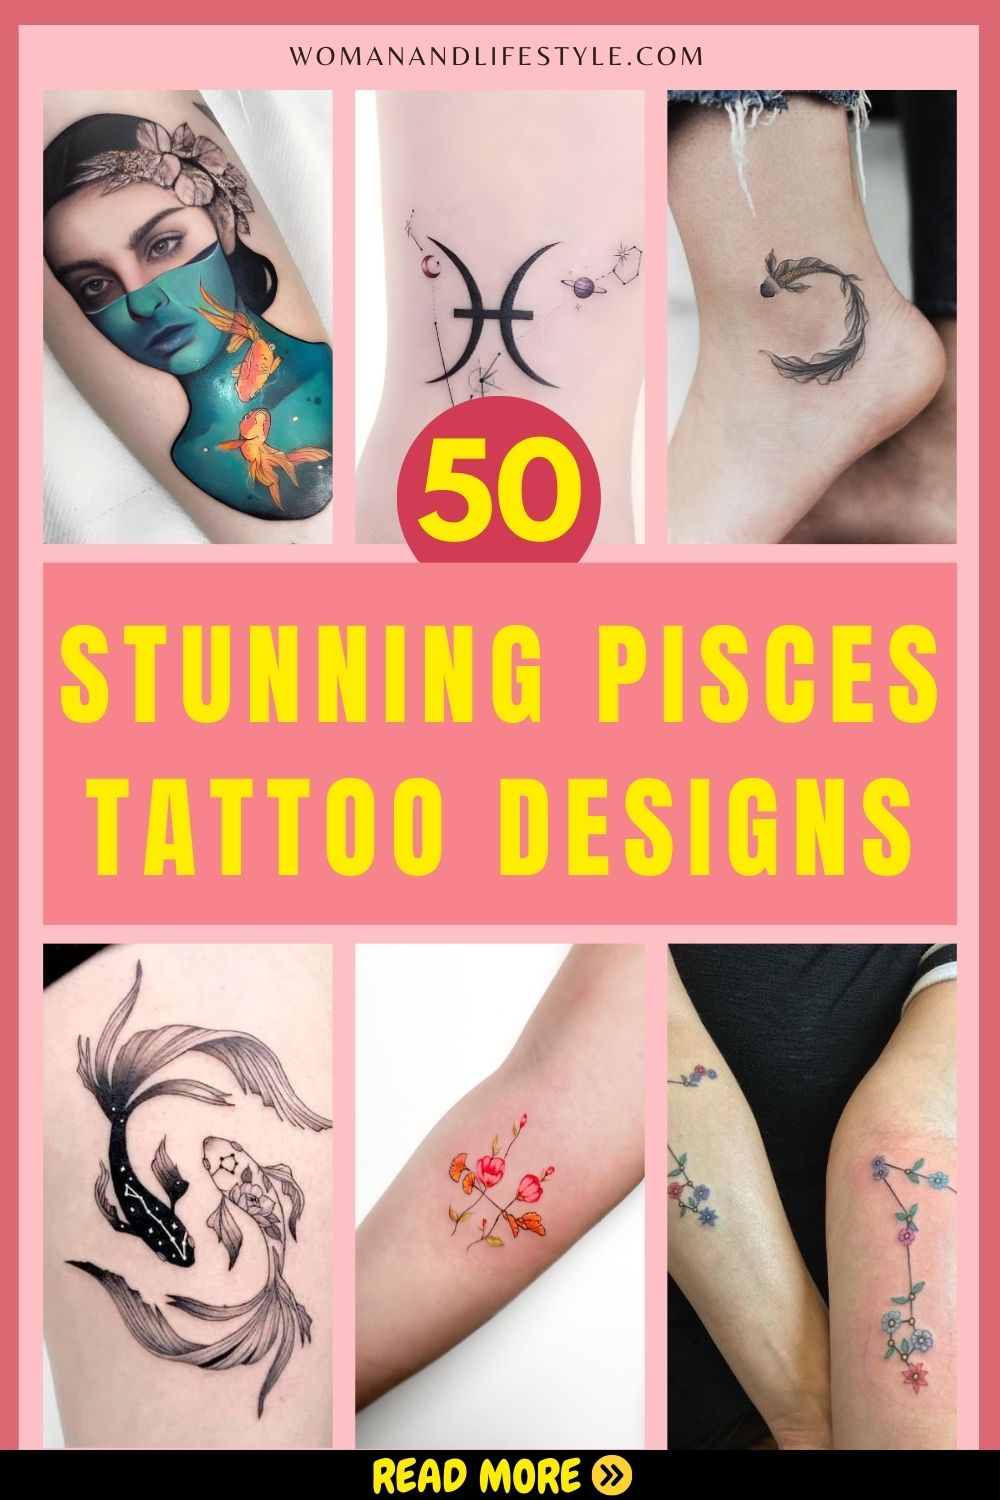 Pisces-tattoo-designs